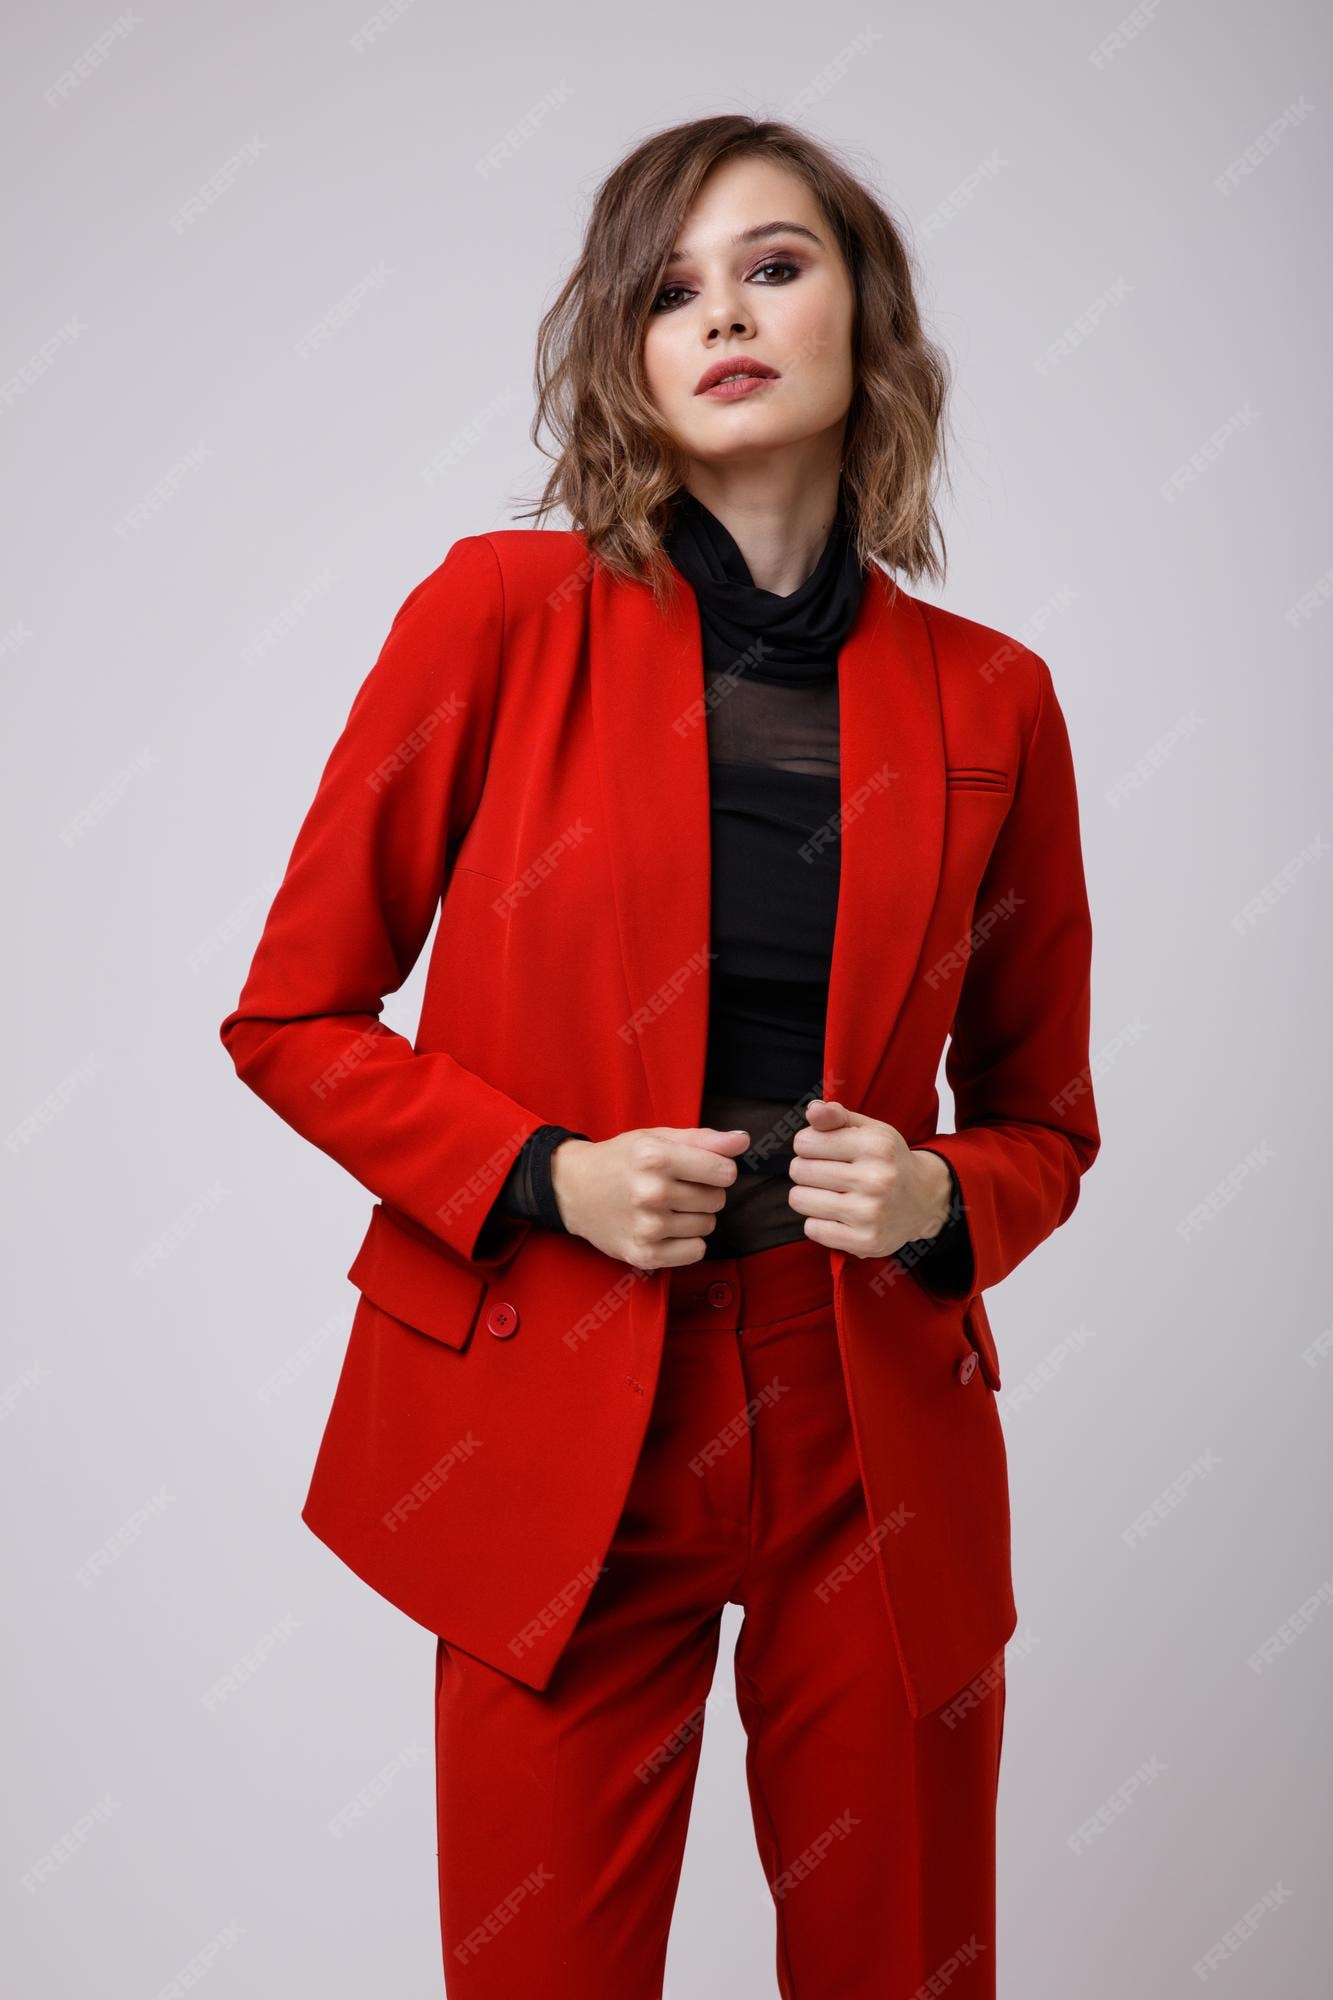 Contorno Último ligero Elegante mujer joven en un bonito traje rojo chaqueta pantalones pantalones  blusa negra sobre fondo blanco. | Foto Premium